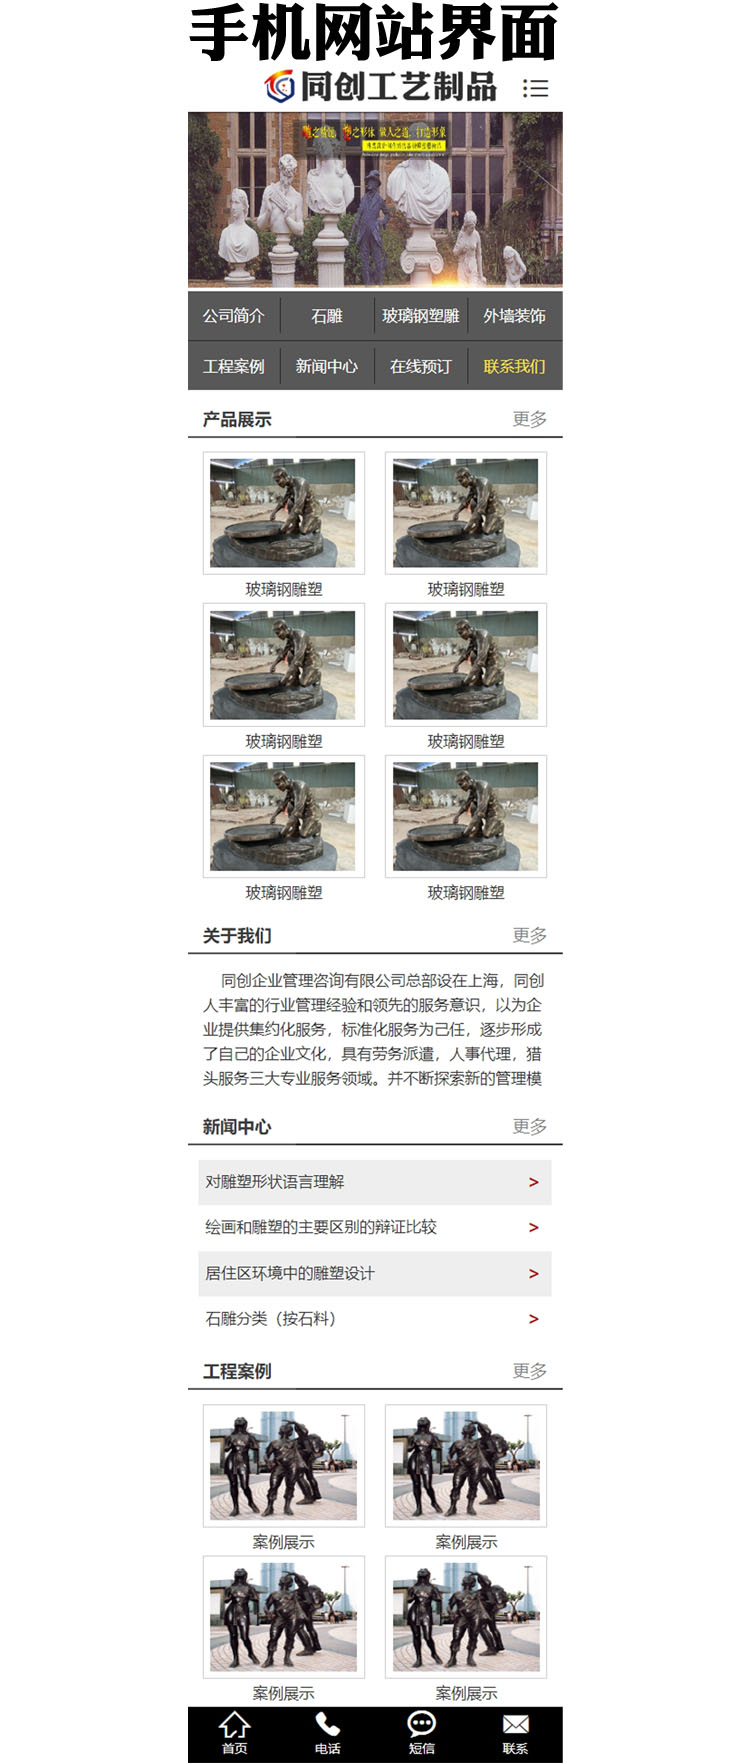 雕塑景观网站源码程序-XX052-3